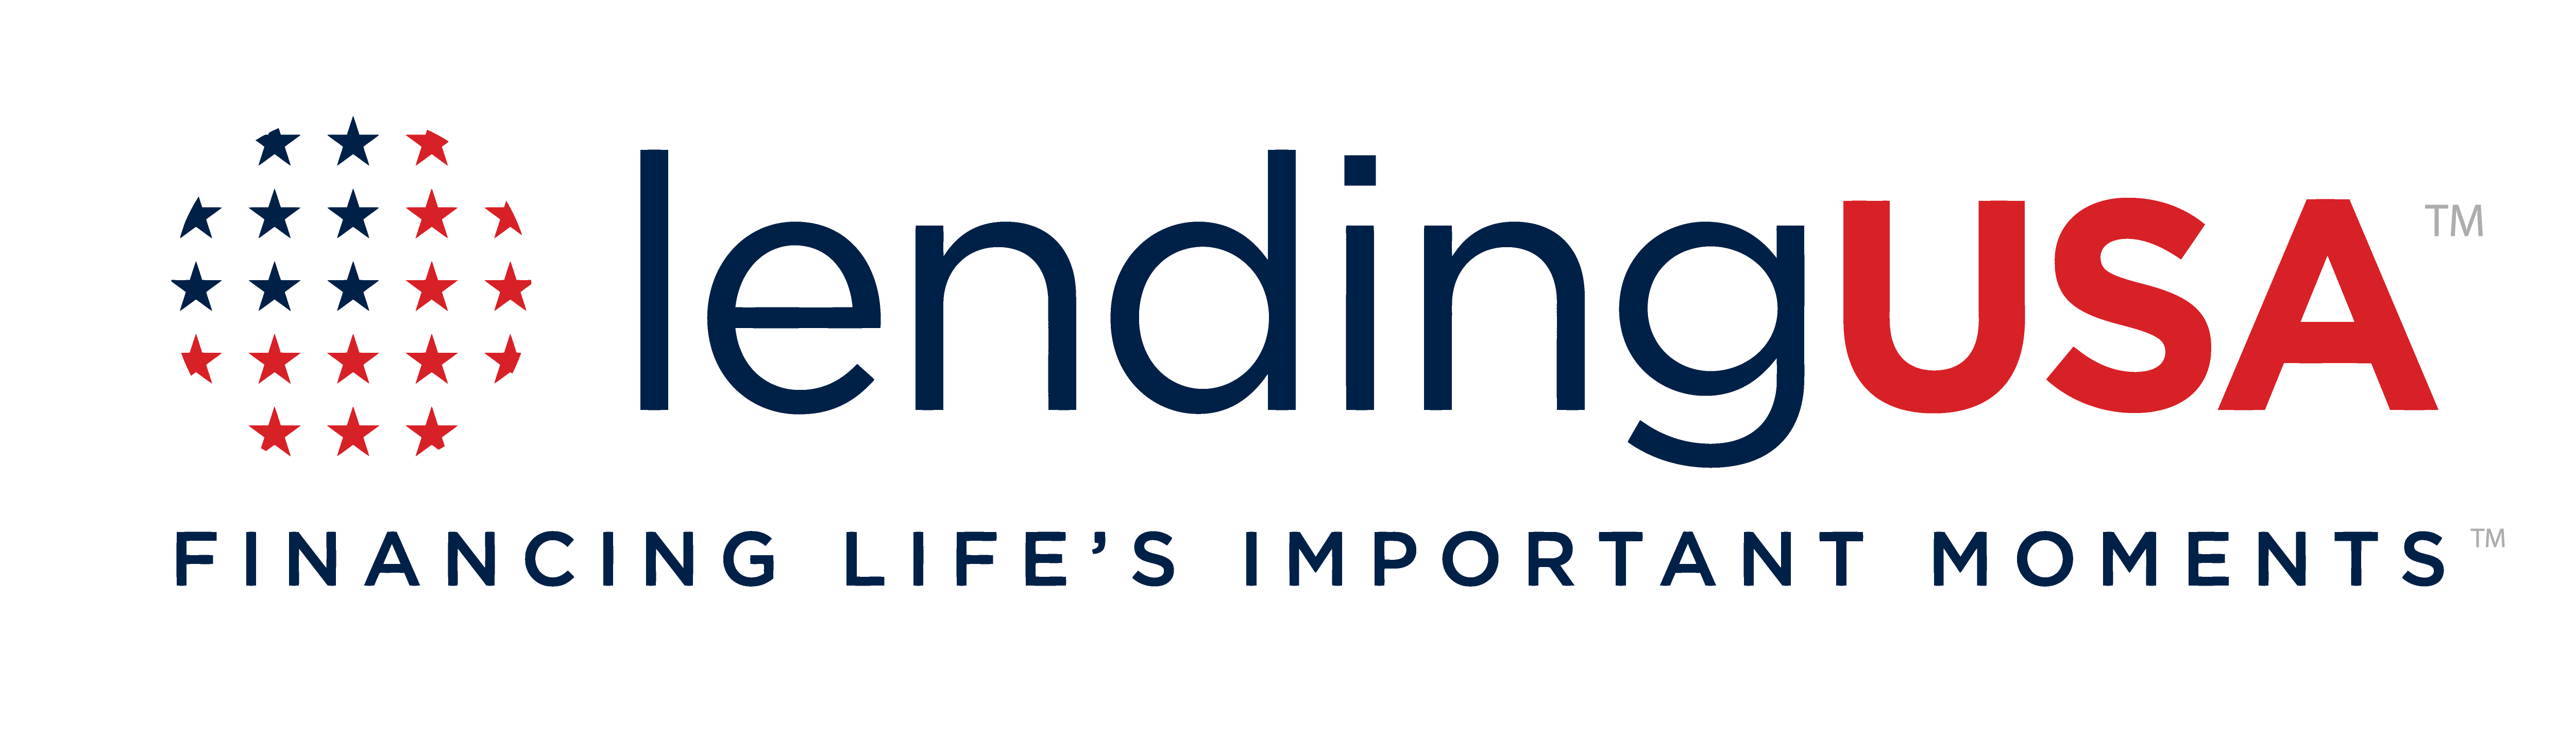 Lending Logo - LendingUSA | Financing Life's Important Moments